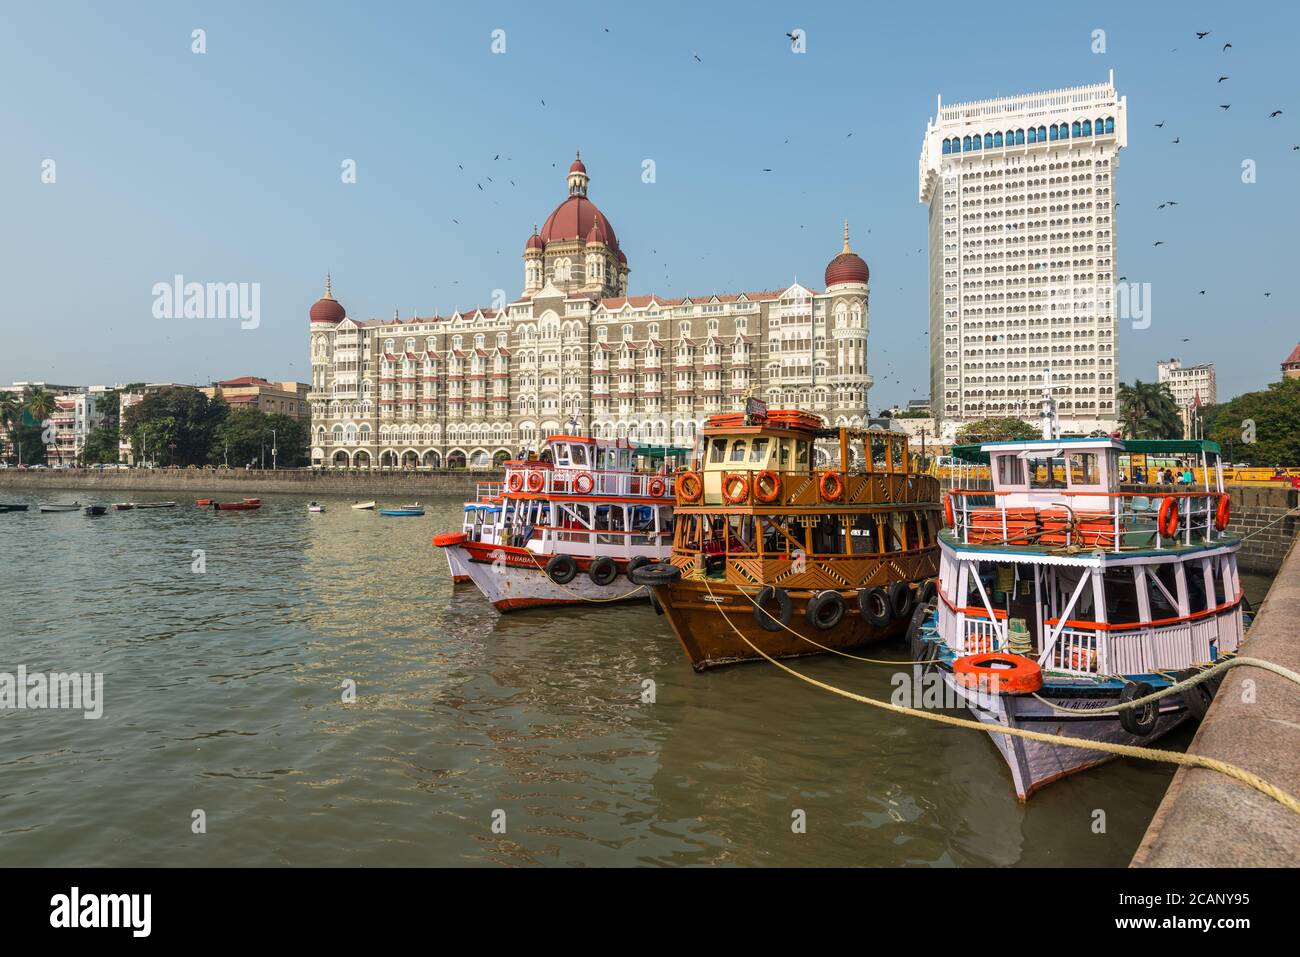 Mumbai, India - November 22, 2019: Taj Mahal Palace and tourist boats as seen from the Mumbai Harbour in Mumbai (colloquially known as Bombay), India. Stock Photo